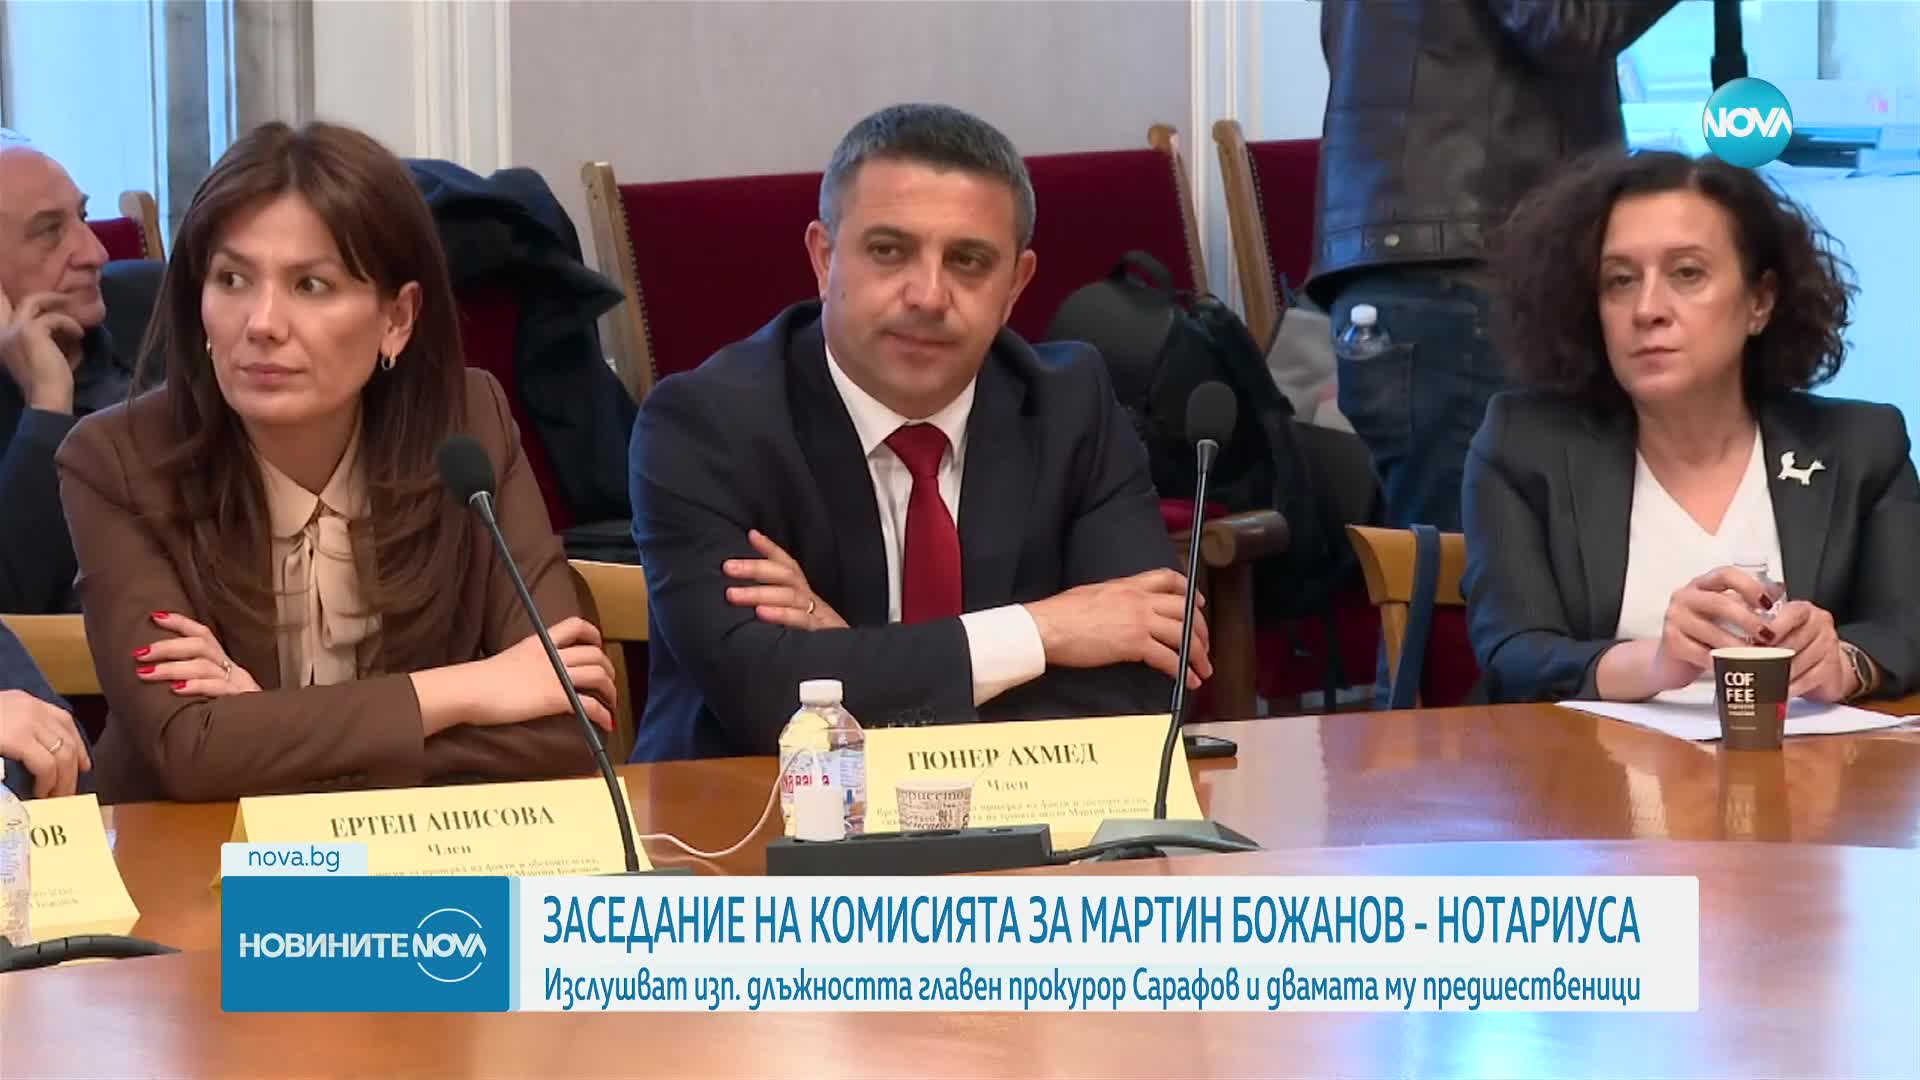 Втори опит на Комисията за Нотариуса да бъдат изслушани Сарафов, Гешев и Цацаров